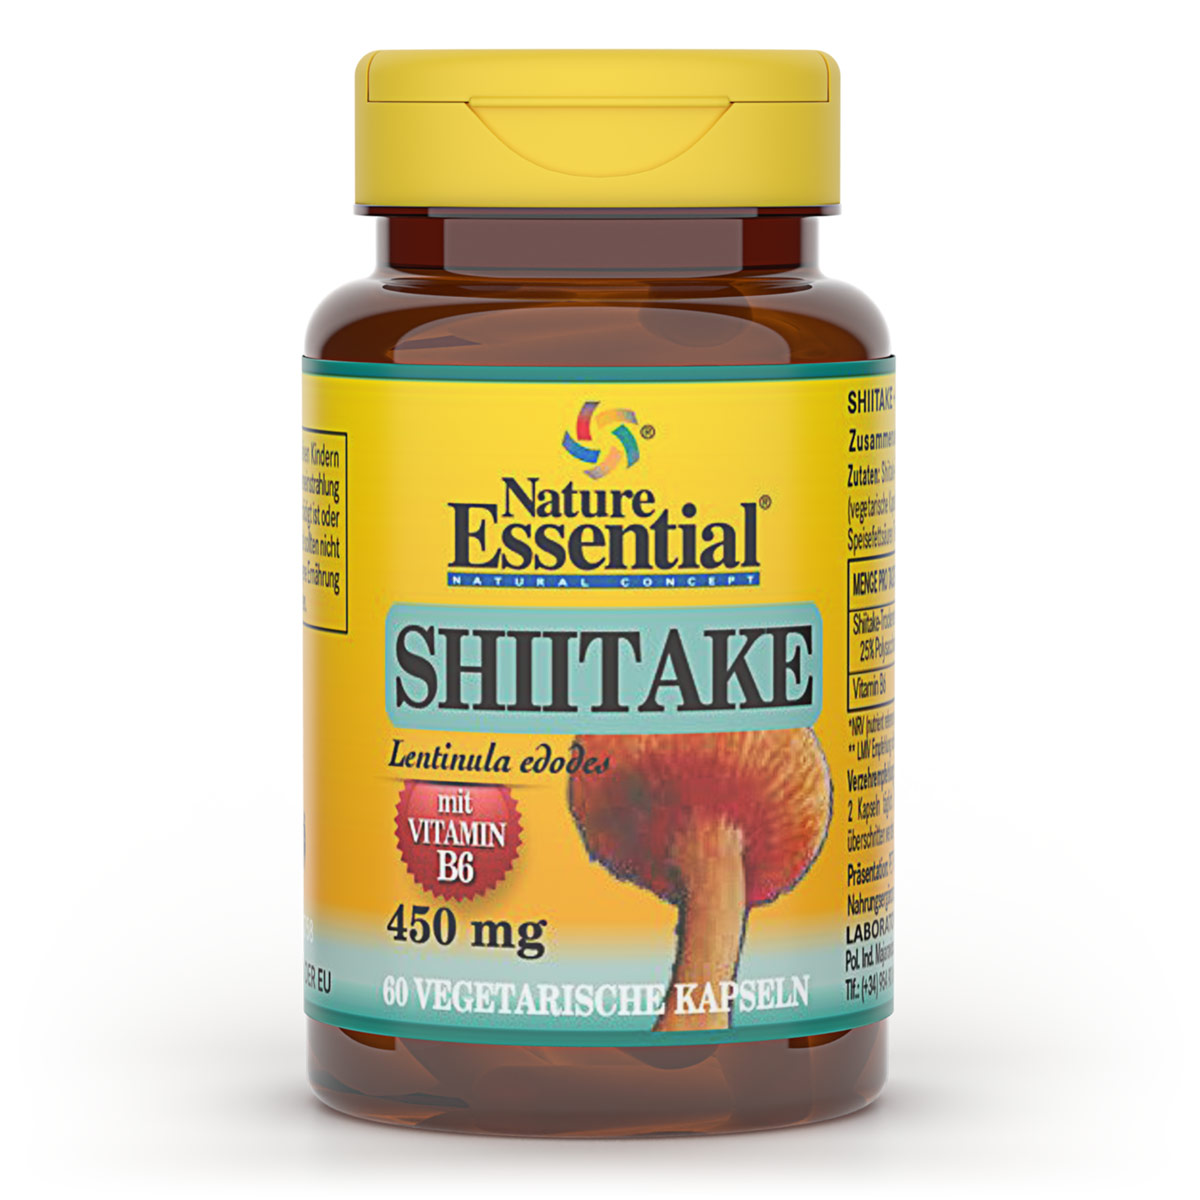 SHIITAKE 1100 + Vitamin B6 Produktverpackung